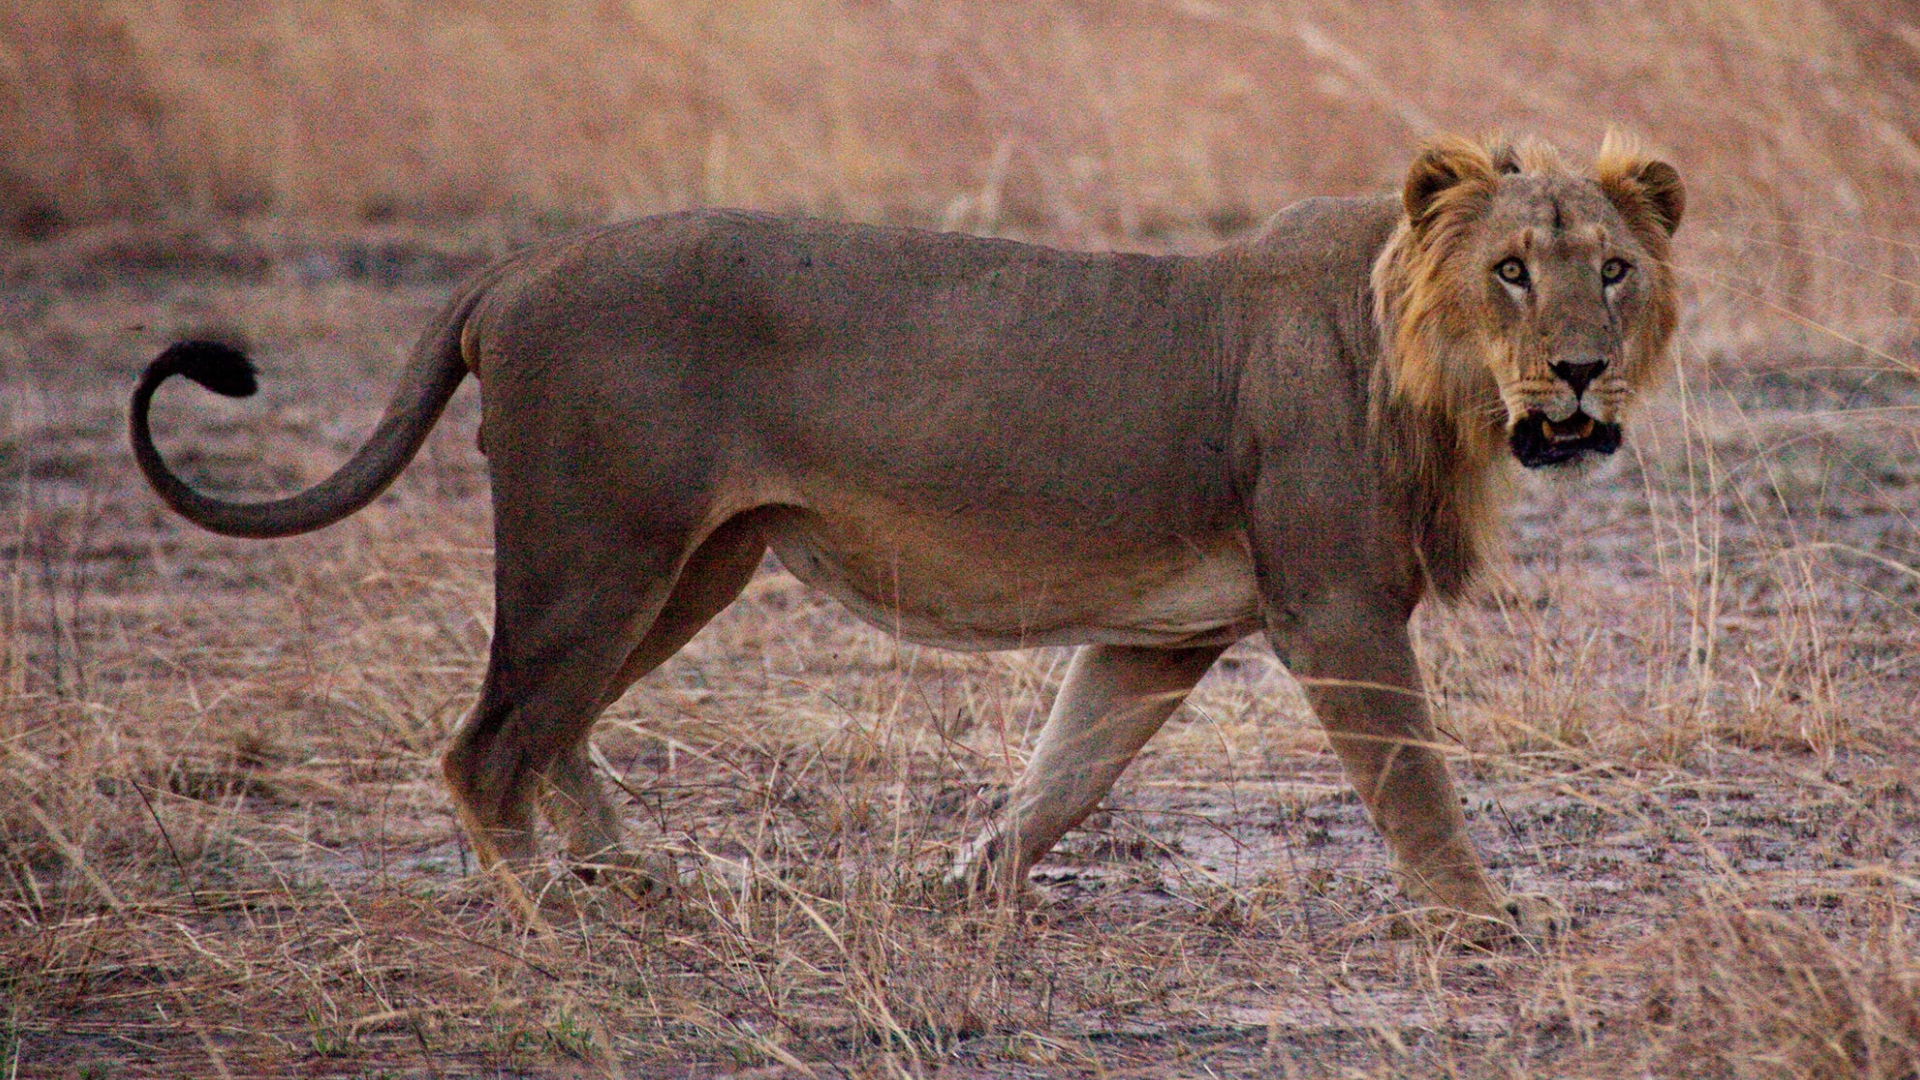 盘点14个狮子亚种,现存仅剩7种,巴巴里狮在野外已经灭绝